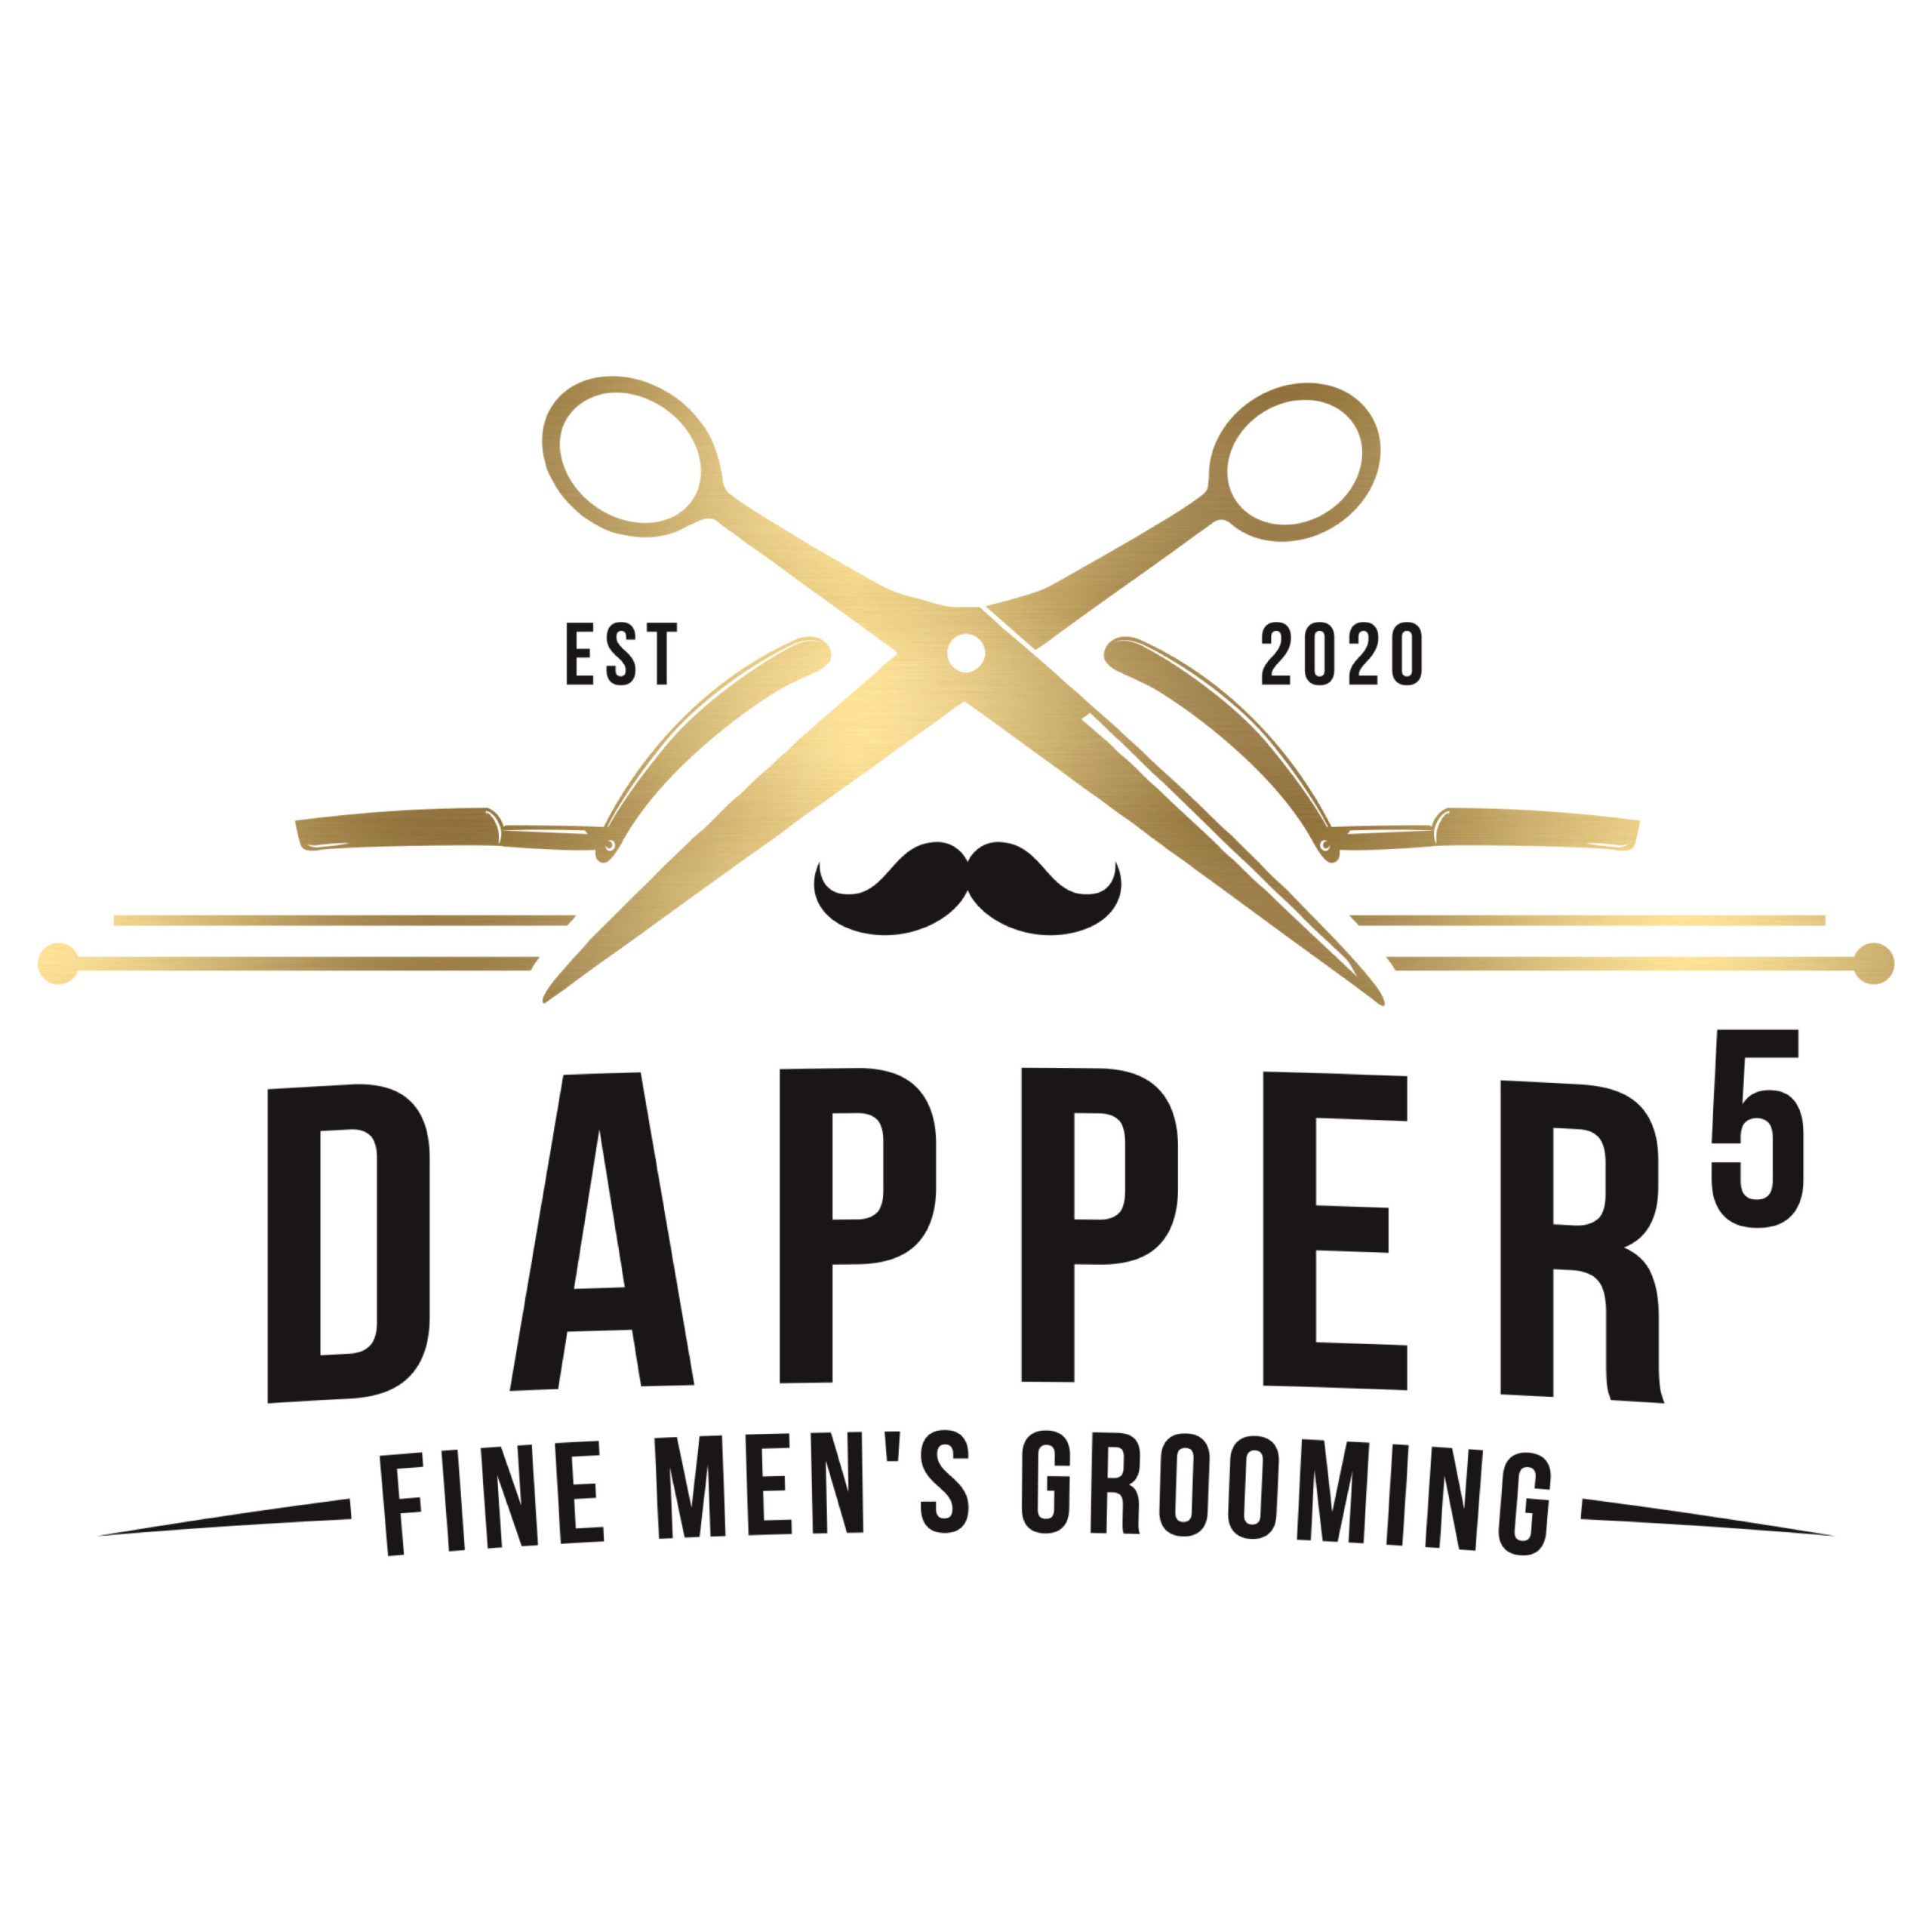 Dapper 5 Fine Men’s Grooming